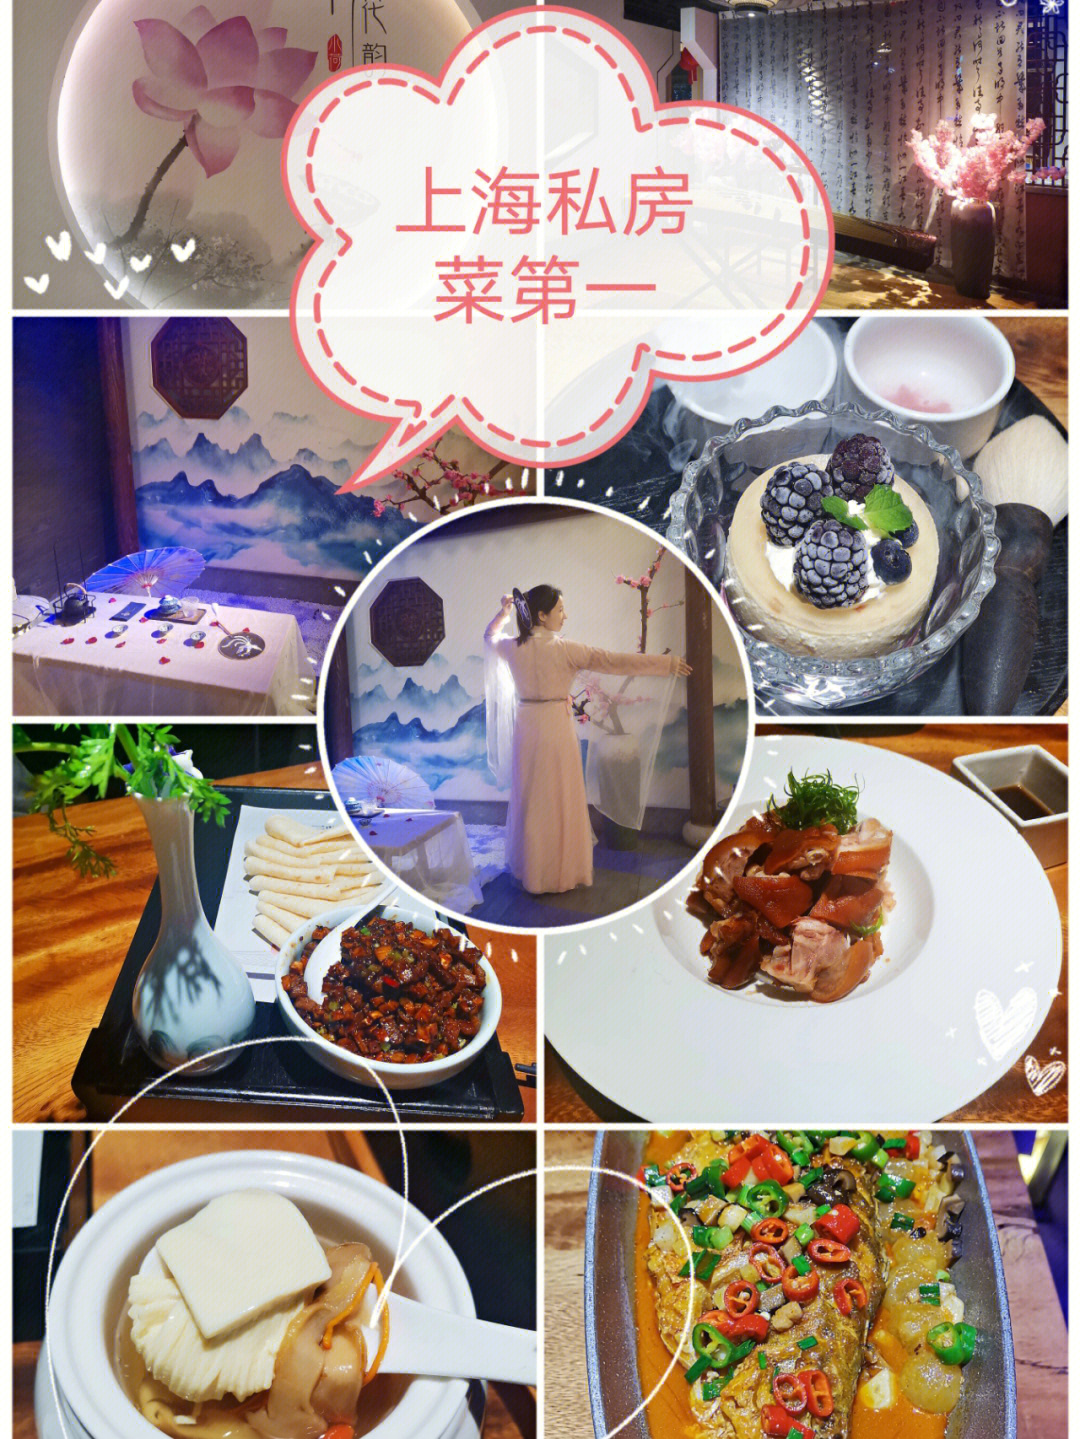 上海萍姐私房菜图片